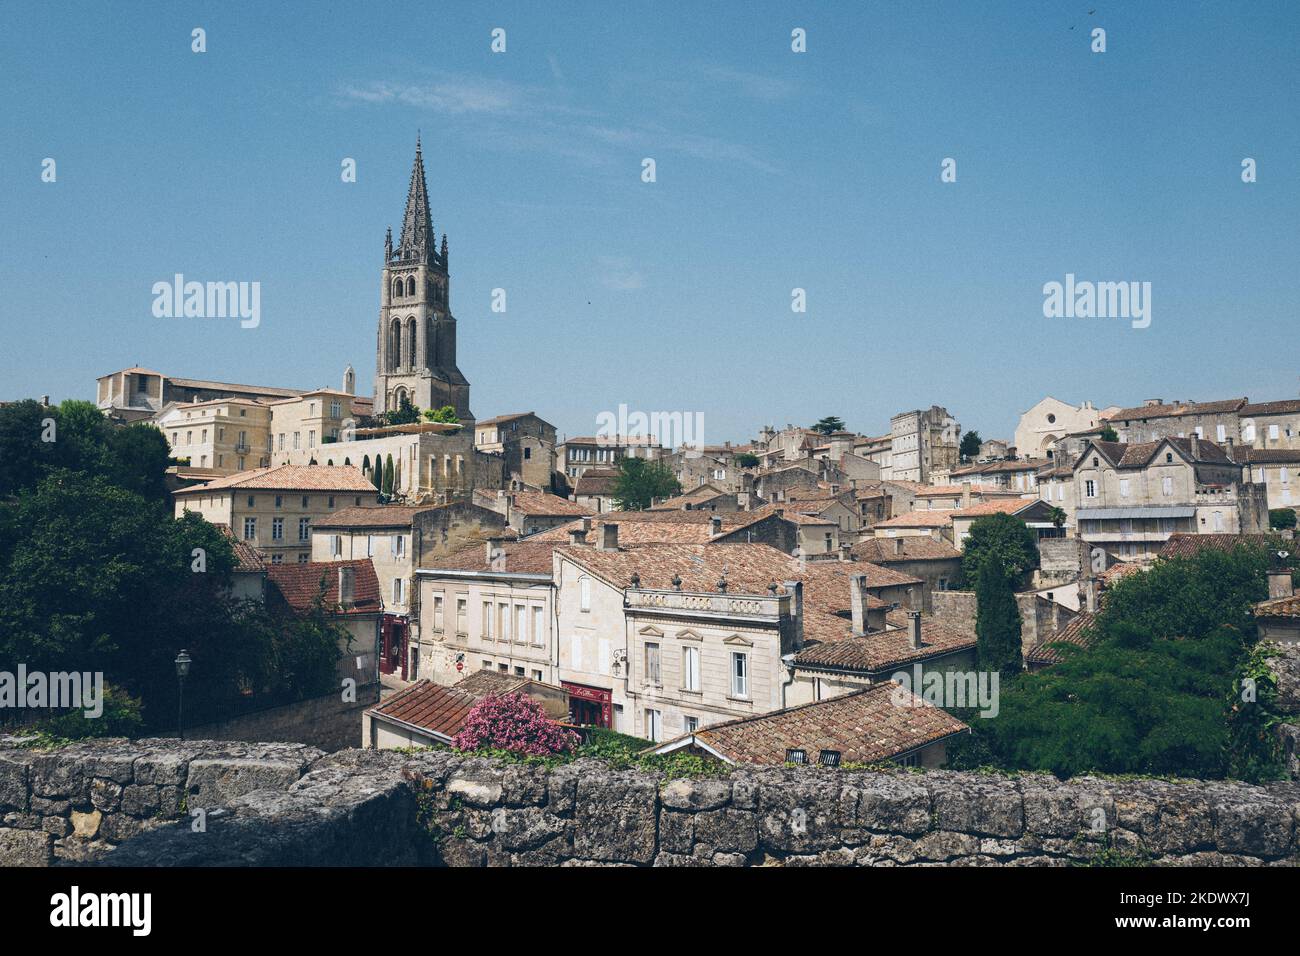 Saint Emilion, eine historische Stadt, die auf Kalkstein erbaut wurde und die Weine dieses Dorfes beeinflusst. Stockfoto